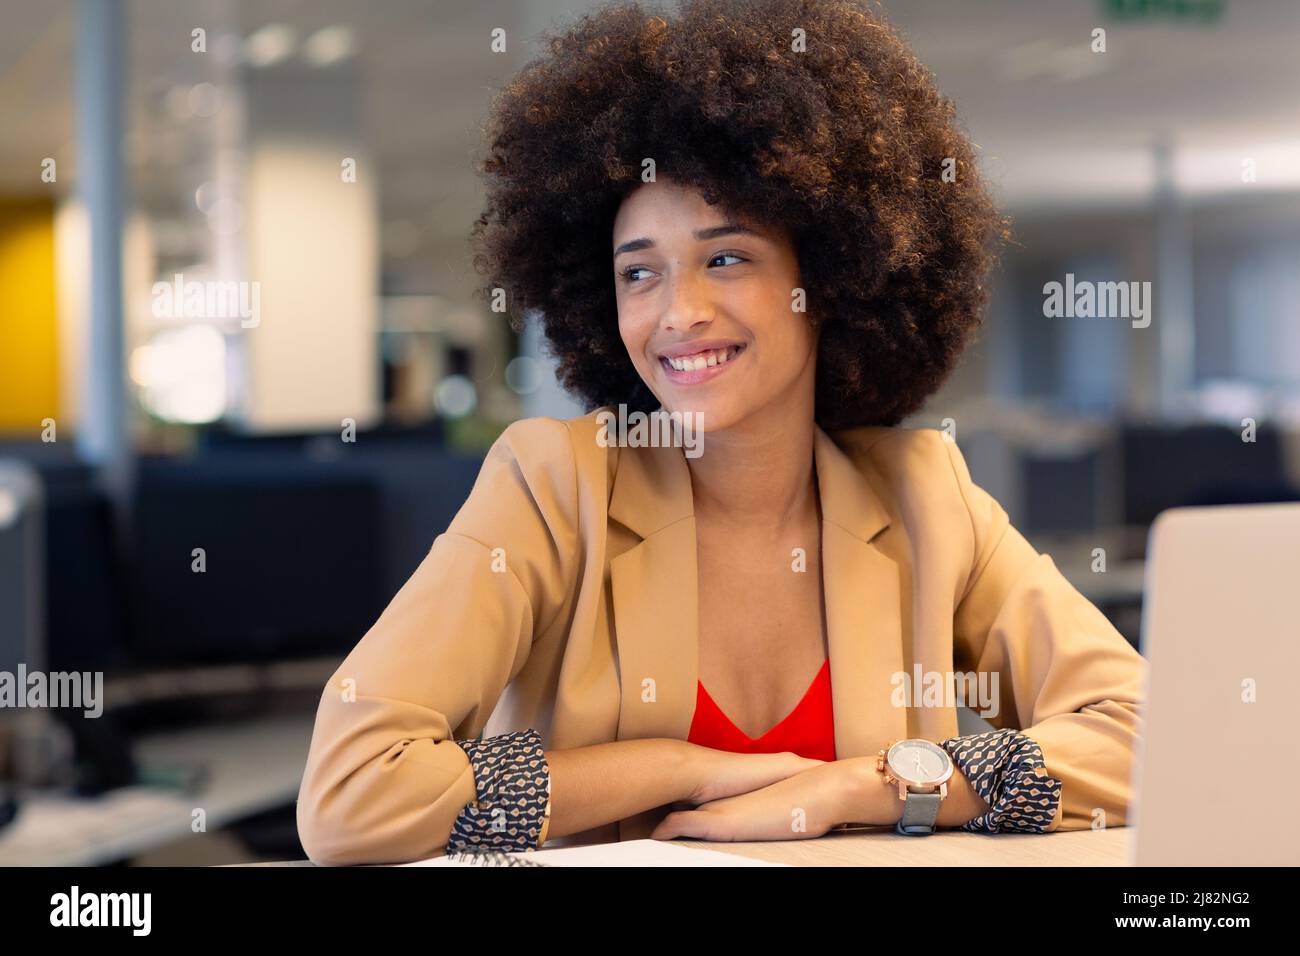 Glückliche junge schöne weibliche afroamerikanische Berater mit afro Frisur Blick weg am Arbeitsplatz Stockfoto